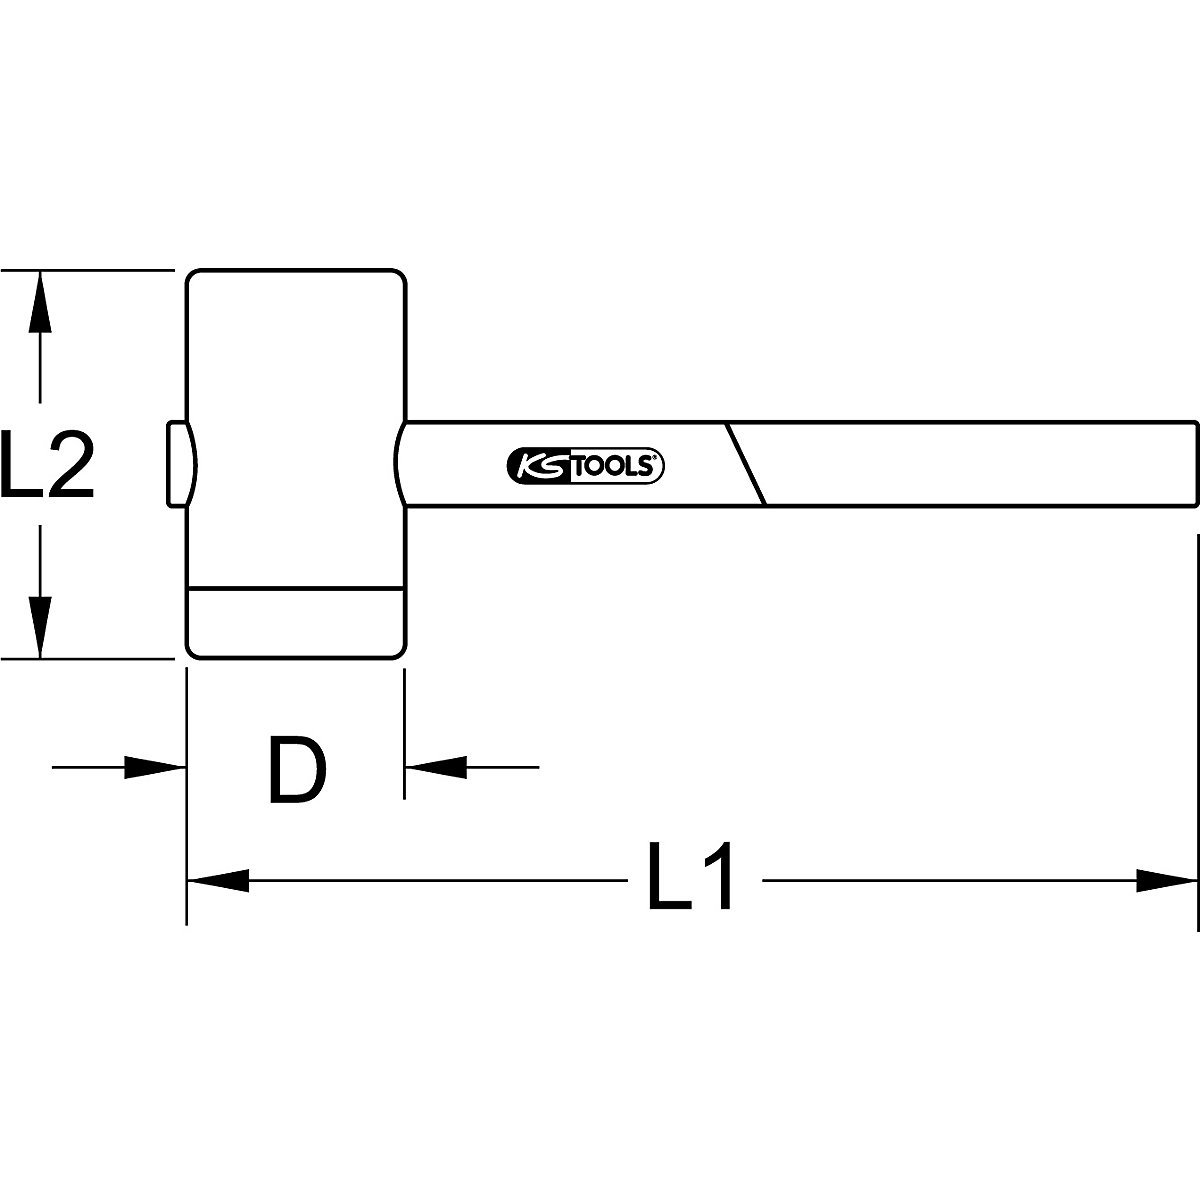 Kladivo iz umetne mase z zaščitno izolacijo – KS Tools (Slika izdelka 2)-1